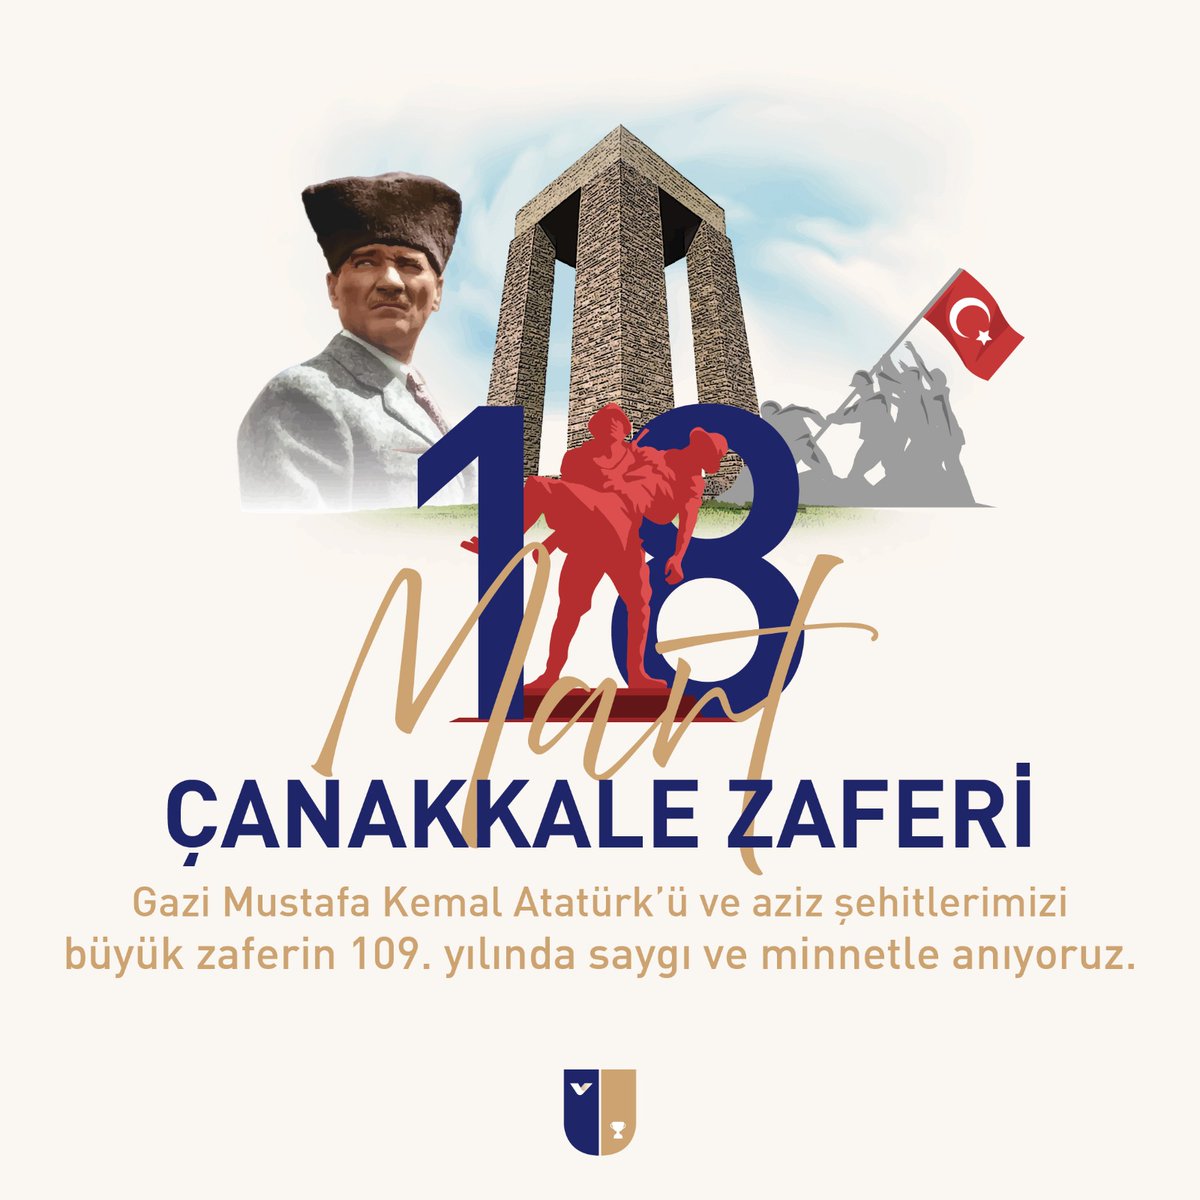 Bir milletin kaderini değiştiren bu destansı zaferin 109. yılında Gazi Mustafa Kemal Atatürk'ü ve aziz şehitlerimizi saygı ve minnetle anıyor, tüm ulusumuzun Çanakkale Zaferi'ni kutluyoruz! 🇹🇷 #CanakkaleZaferi